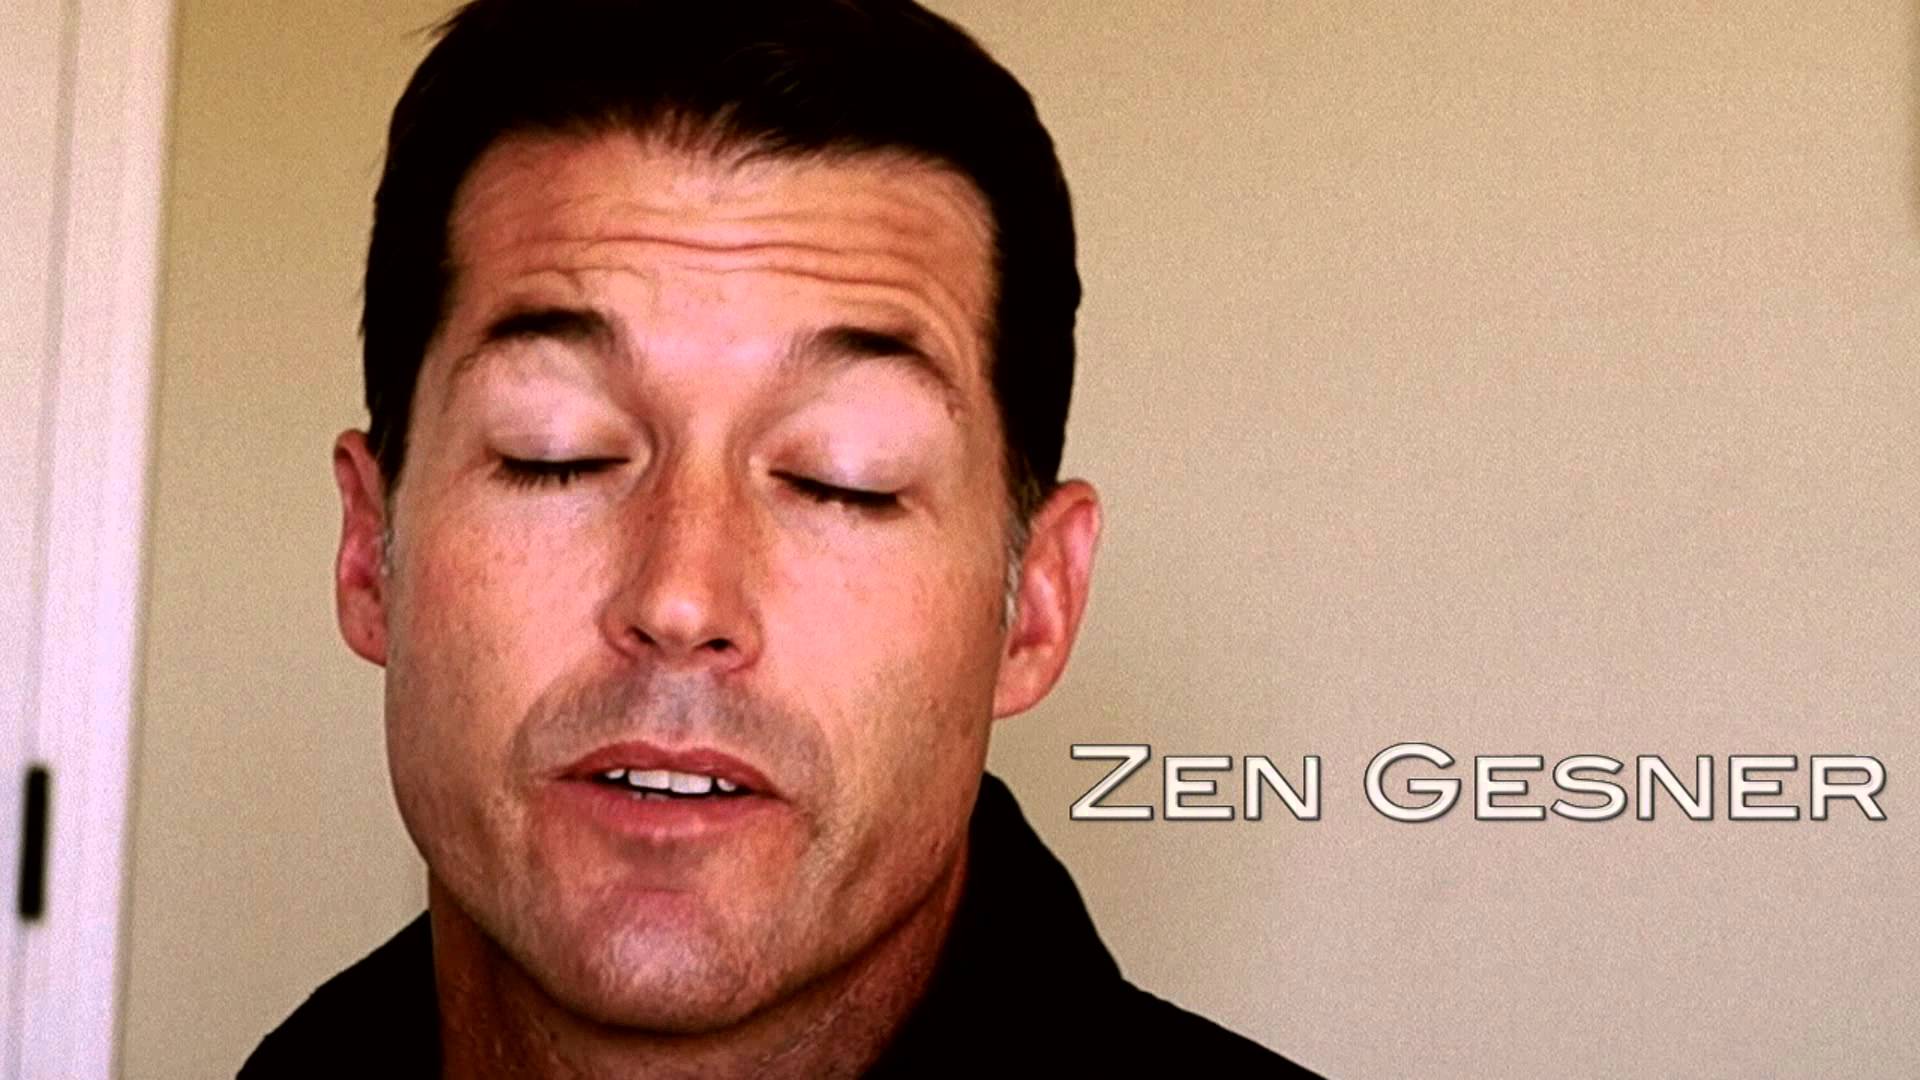 zen-gesner-2015